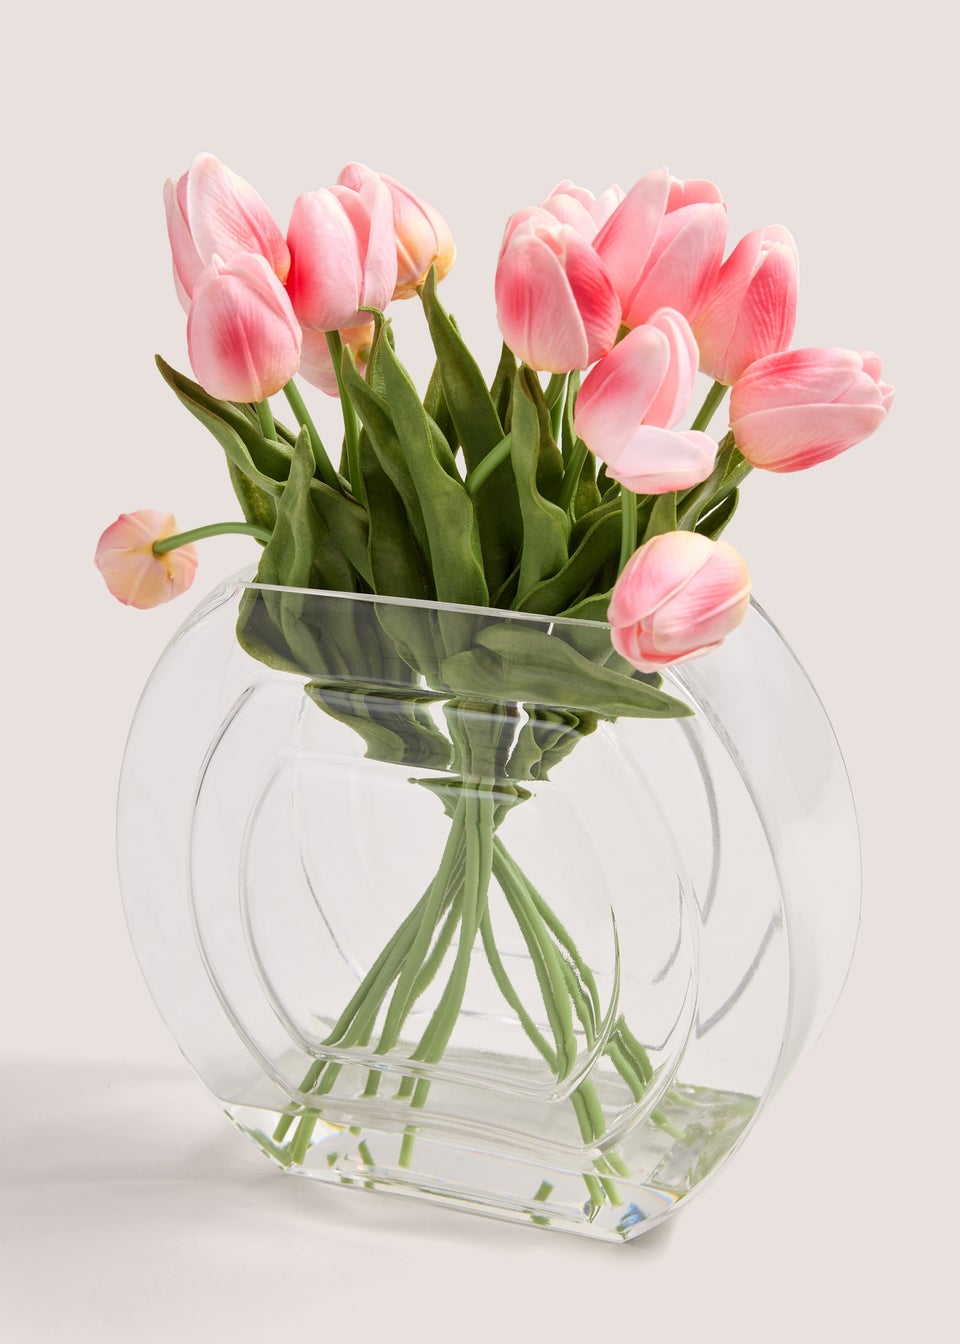 Tulips In Round Glass Pot (36cm x 27cm x 12cm)